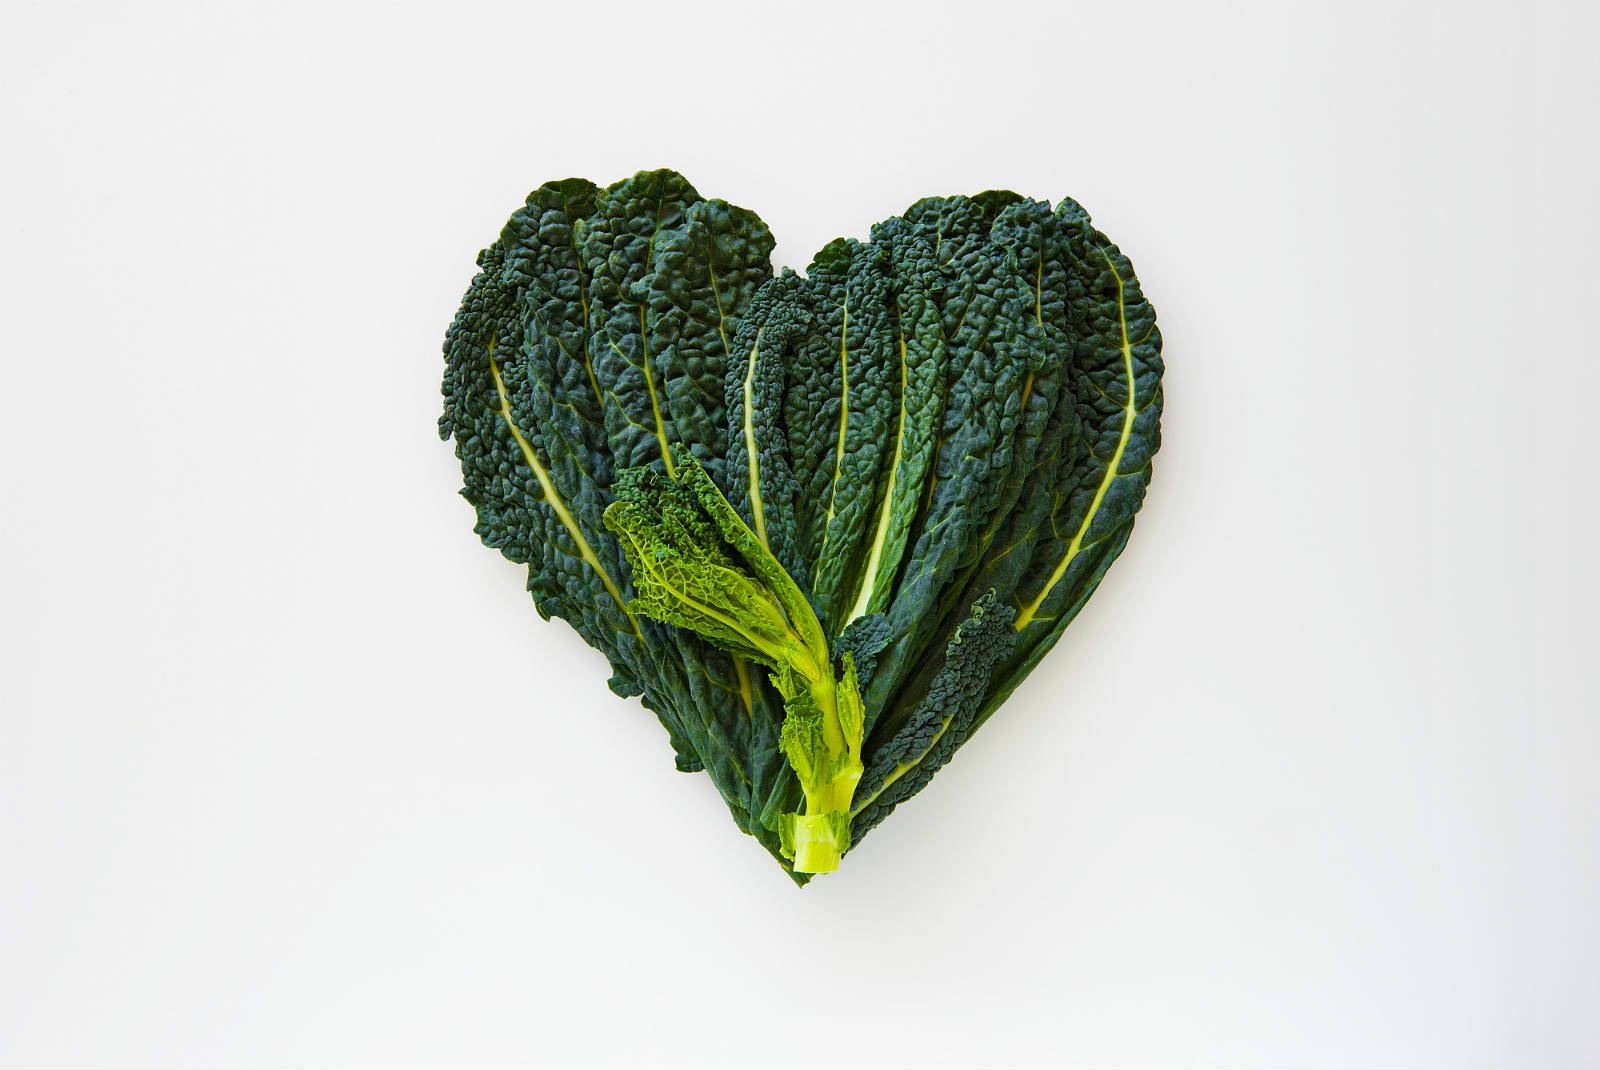 Heart-shaped Kale Leaf Wallpaper